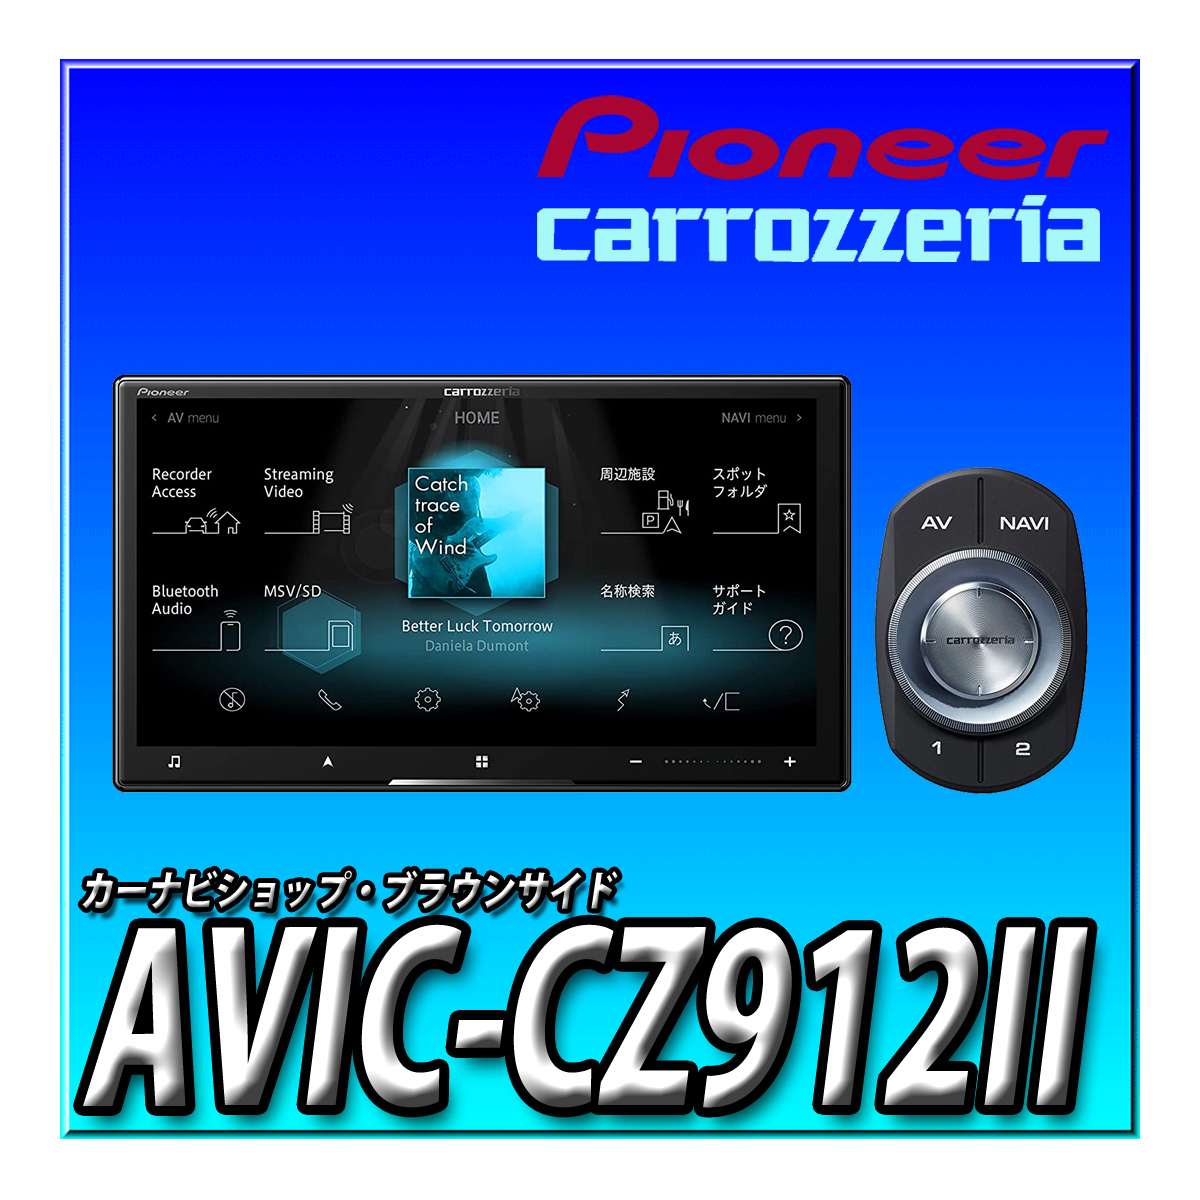 AVIC-CZ912II 送料無料 カロッツェリア サイバーナビ パイオニア 2DIN 7型HD Bluetooth接続 カーナビ_画像1